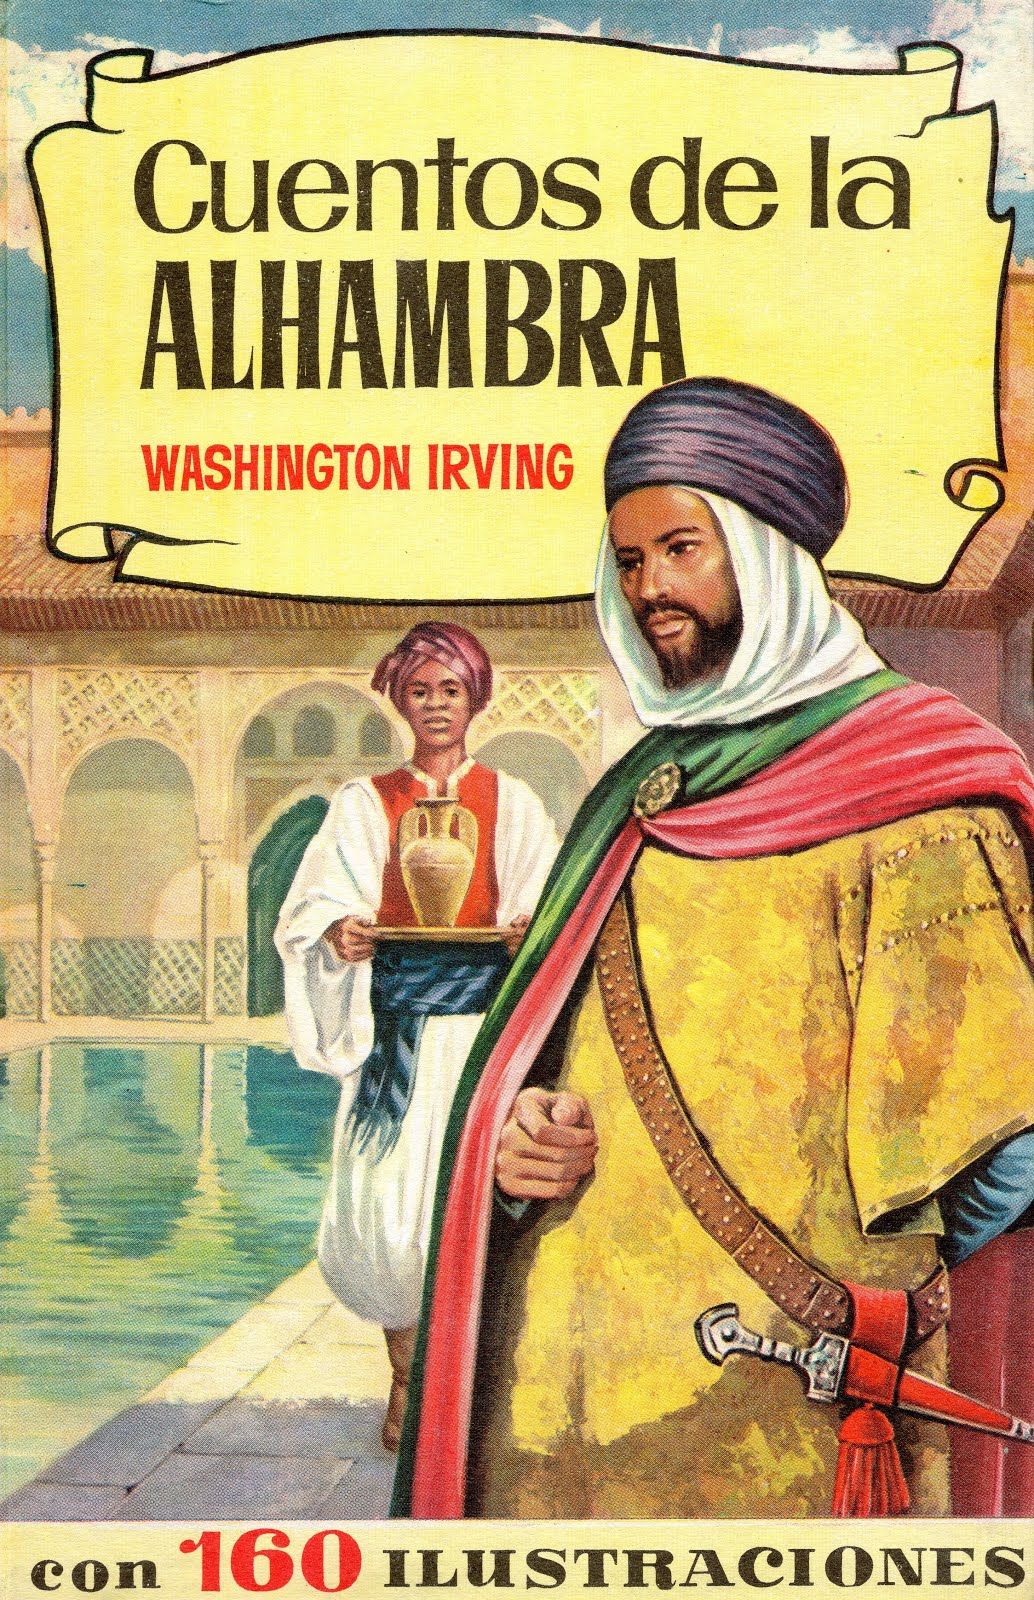 Cuentos de la Alhambra, 1964 Col. Historias, Ed. Bruguera